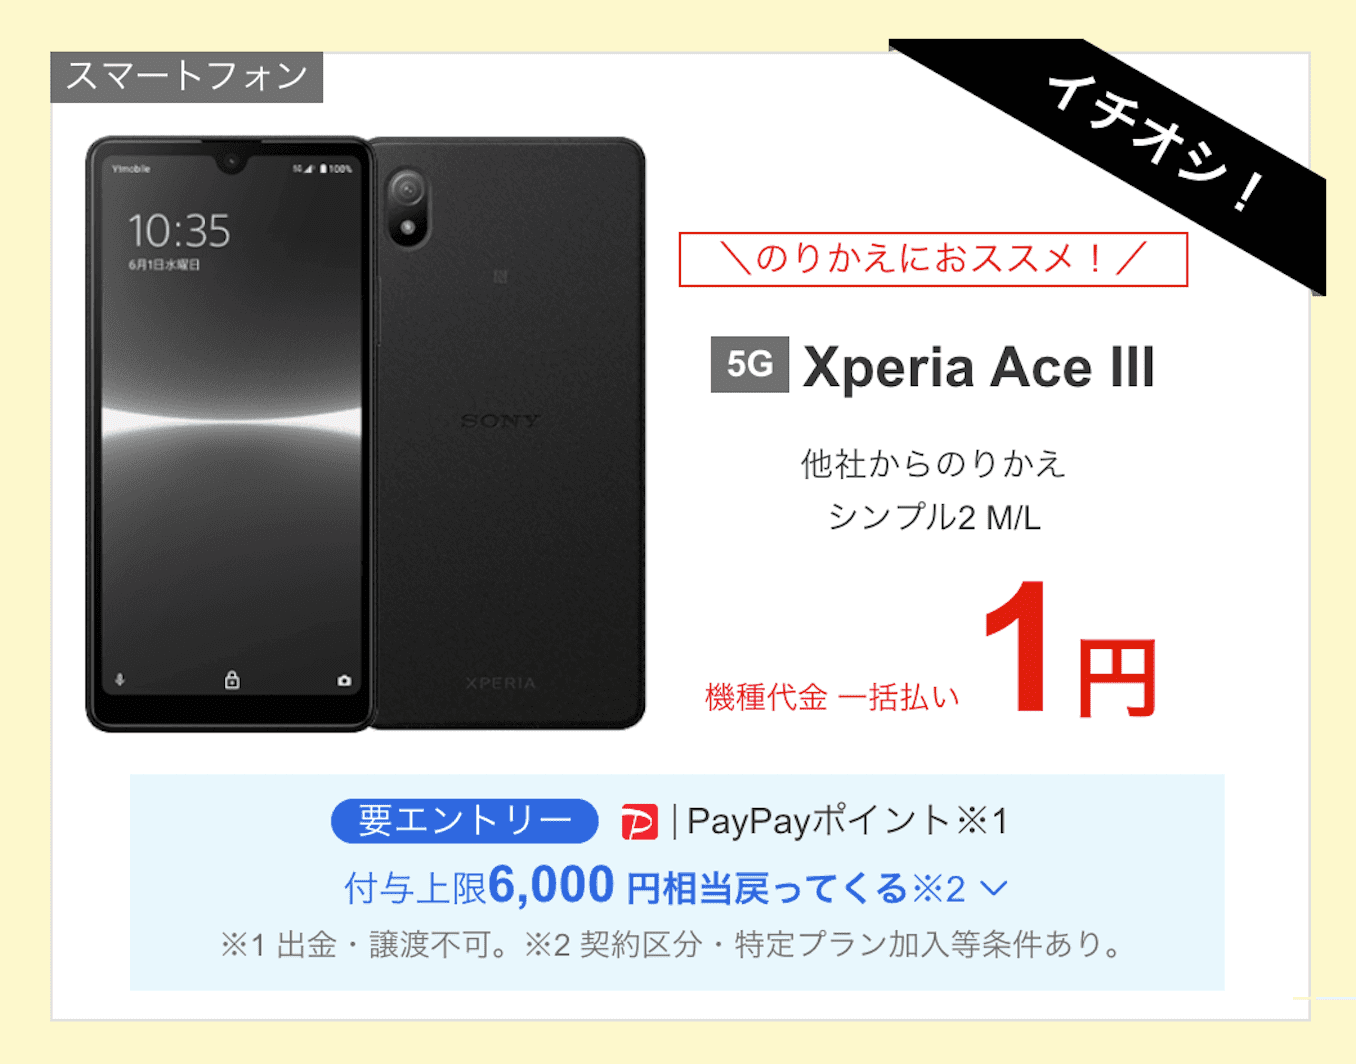 ワイモバイルのXperia Ace IIIのキャンペーンとレビュー【1円スマホ評価】